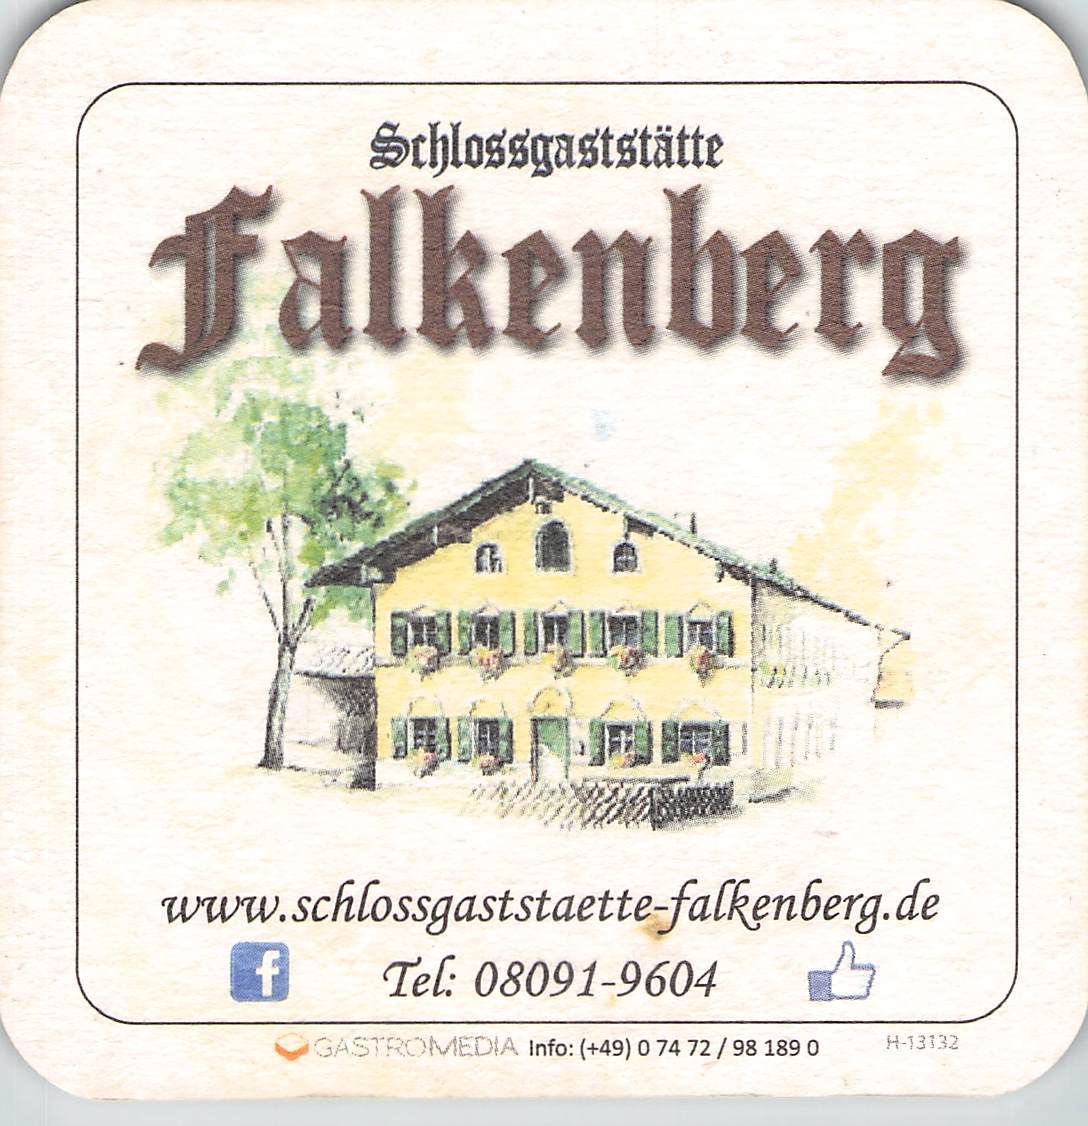 Falkenberg Biergarten